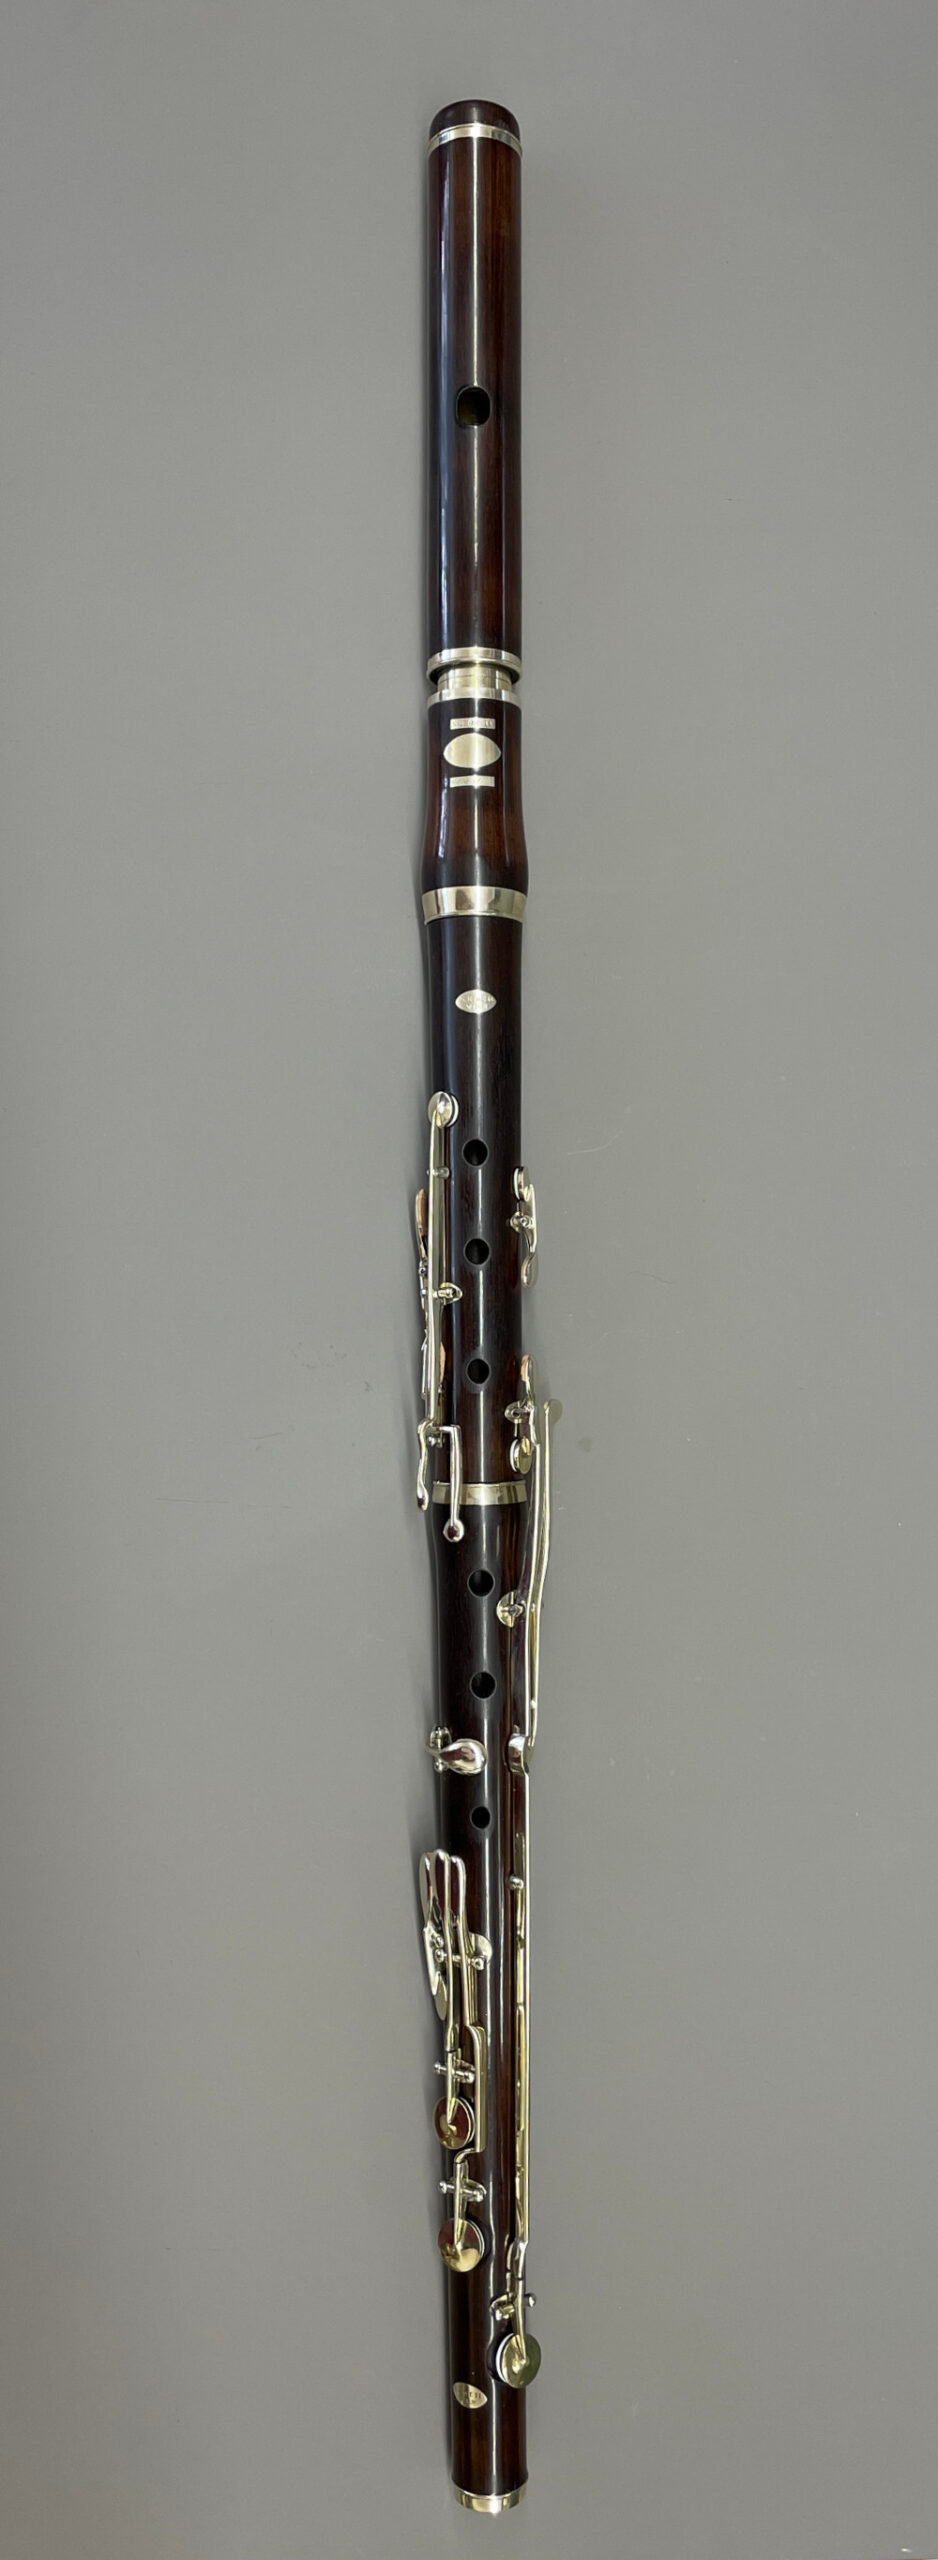 Flute-Koch-vm-collectables-3